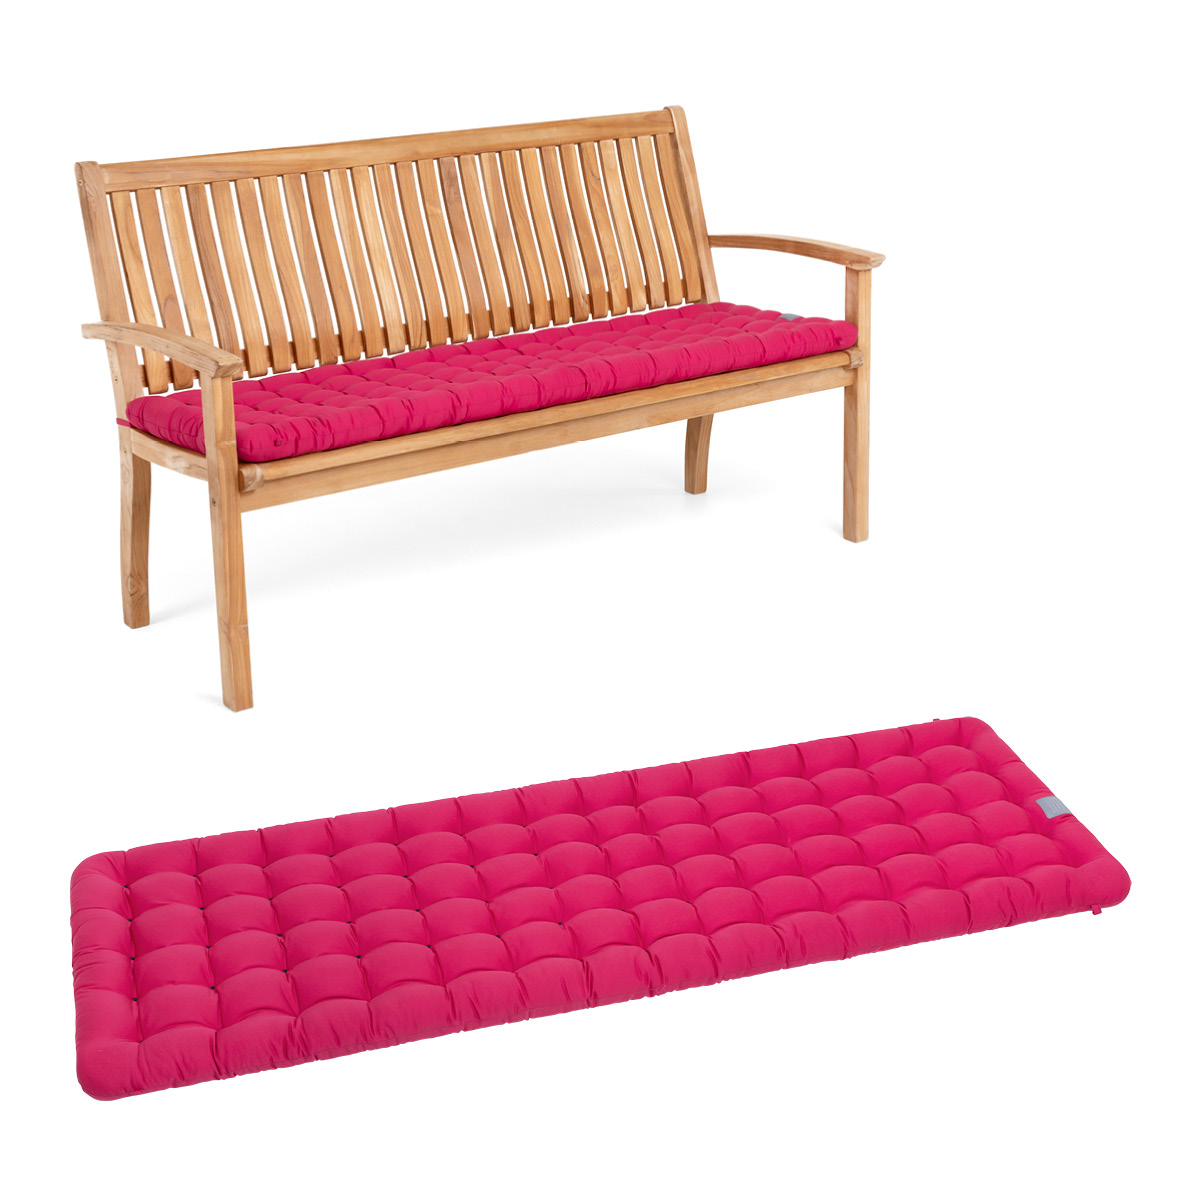 HAVE A SEAT Living Gartenbank Auflage Hot Pink | bequemes Sitzpolster, orthopädische gepolsterte Sitzauflage für Gartenbänke / Sitzbänke